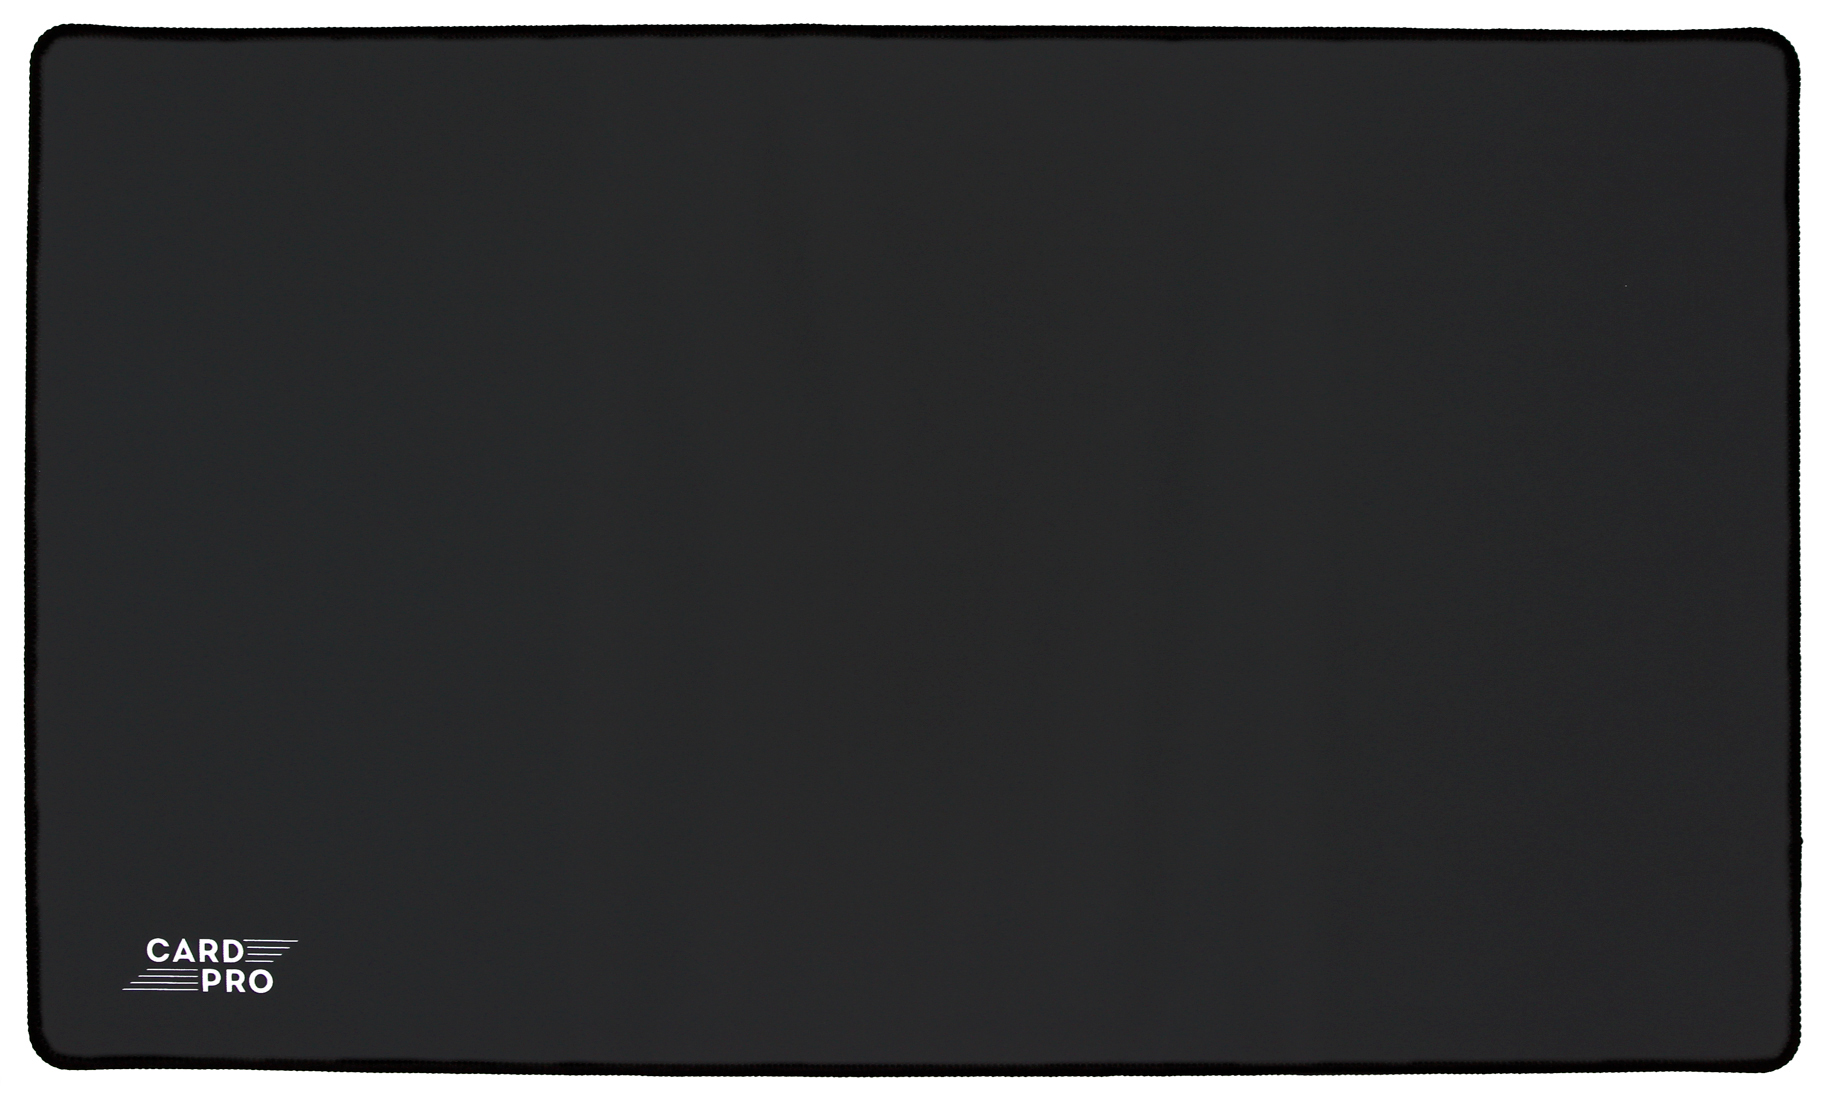 Игровой коврик Card-Pro Черный 274733 игровой коврик для мыши mad catz g l i d e 21 чёрный 430 x 370 x 1 8 мм силикон водоотталкивающая ткань